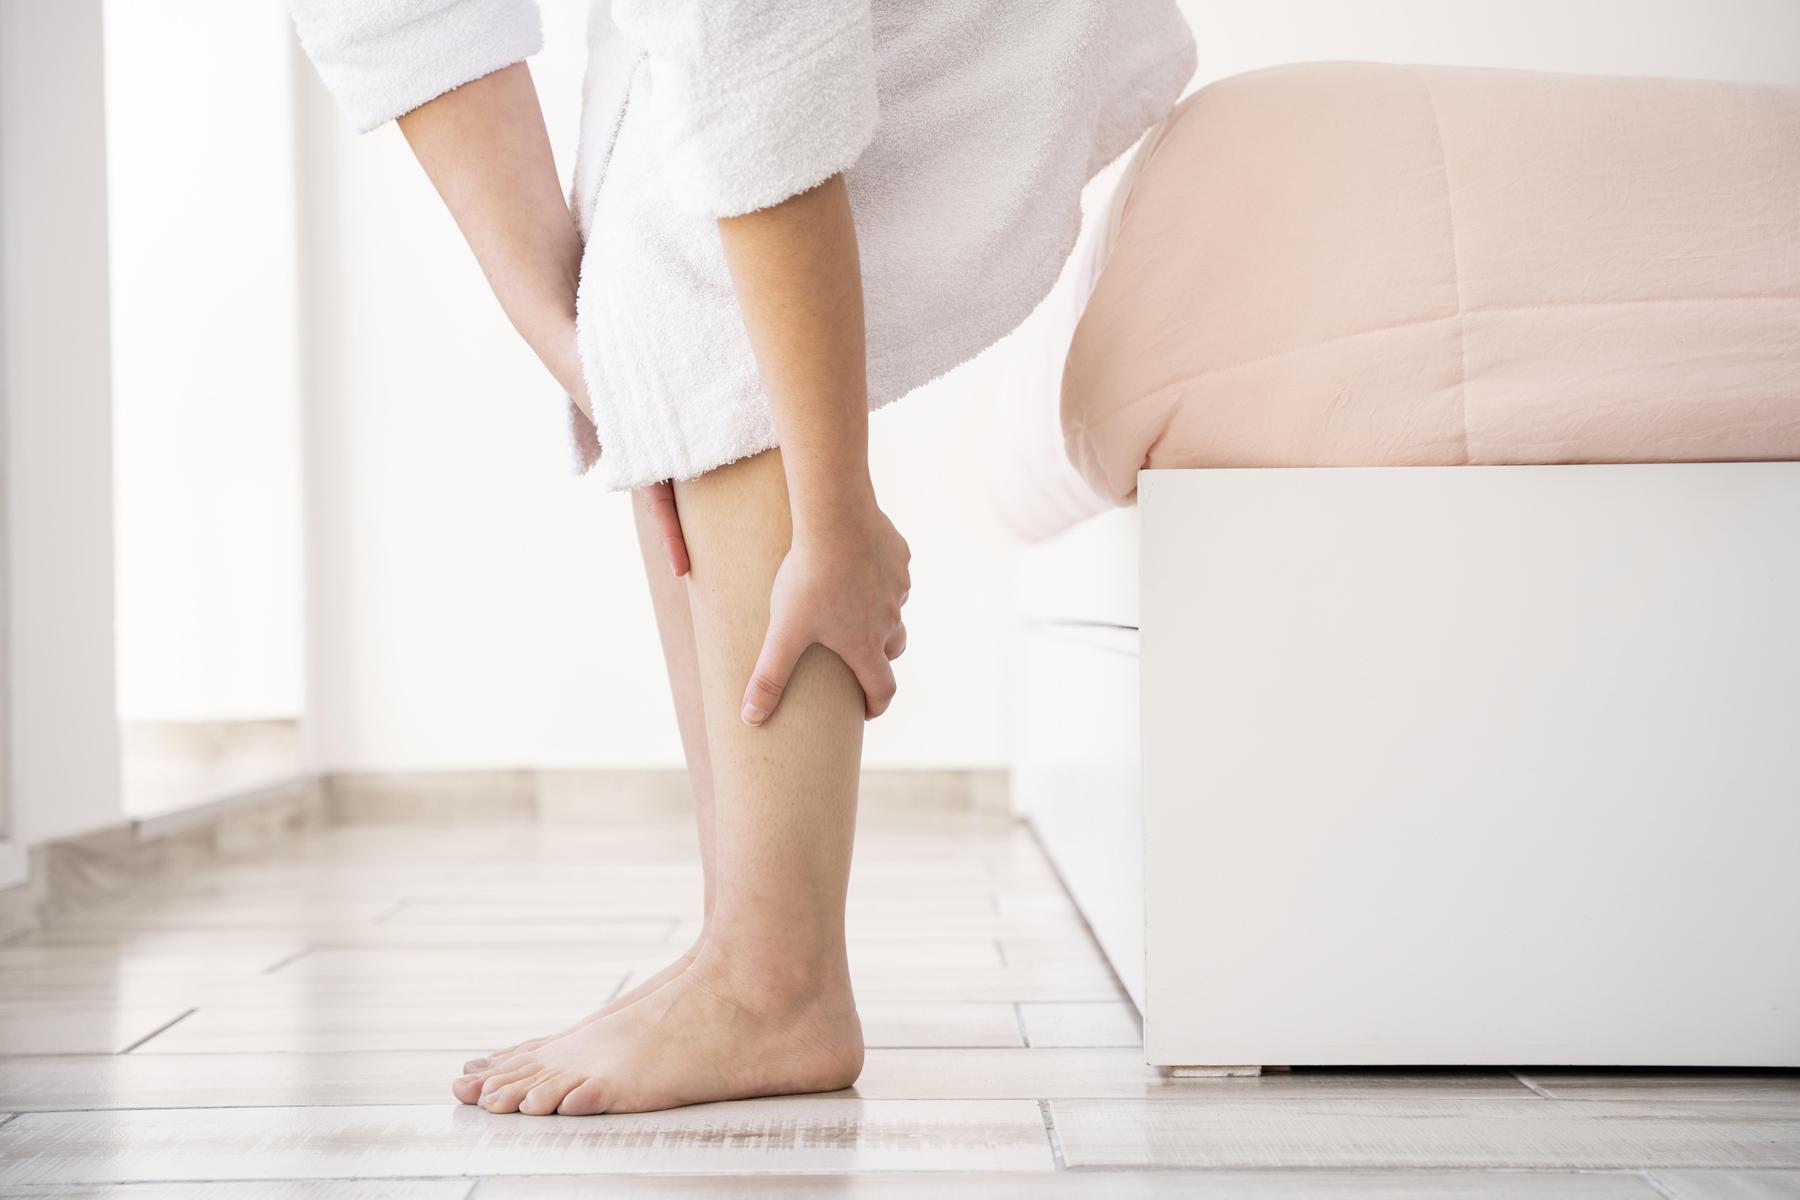 Dor e queimação nas pernas são alguns dos primeiros sintomas da trombose